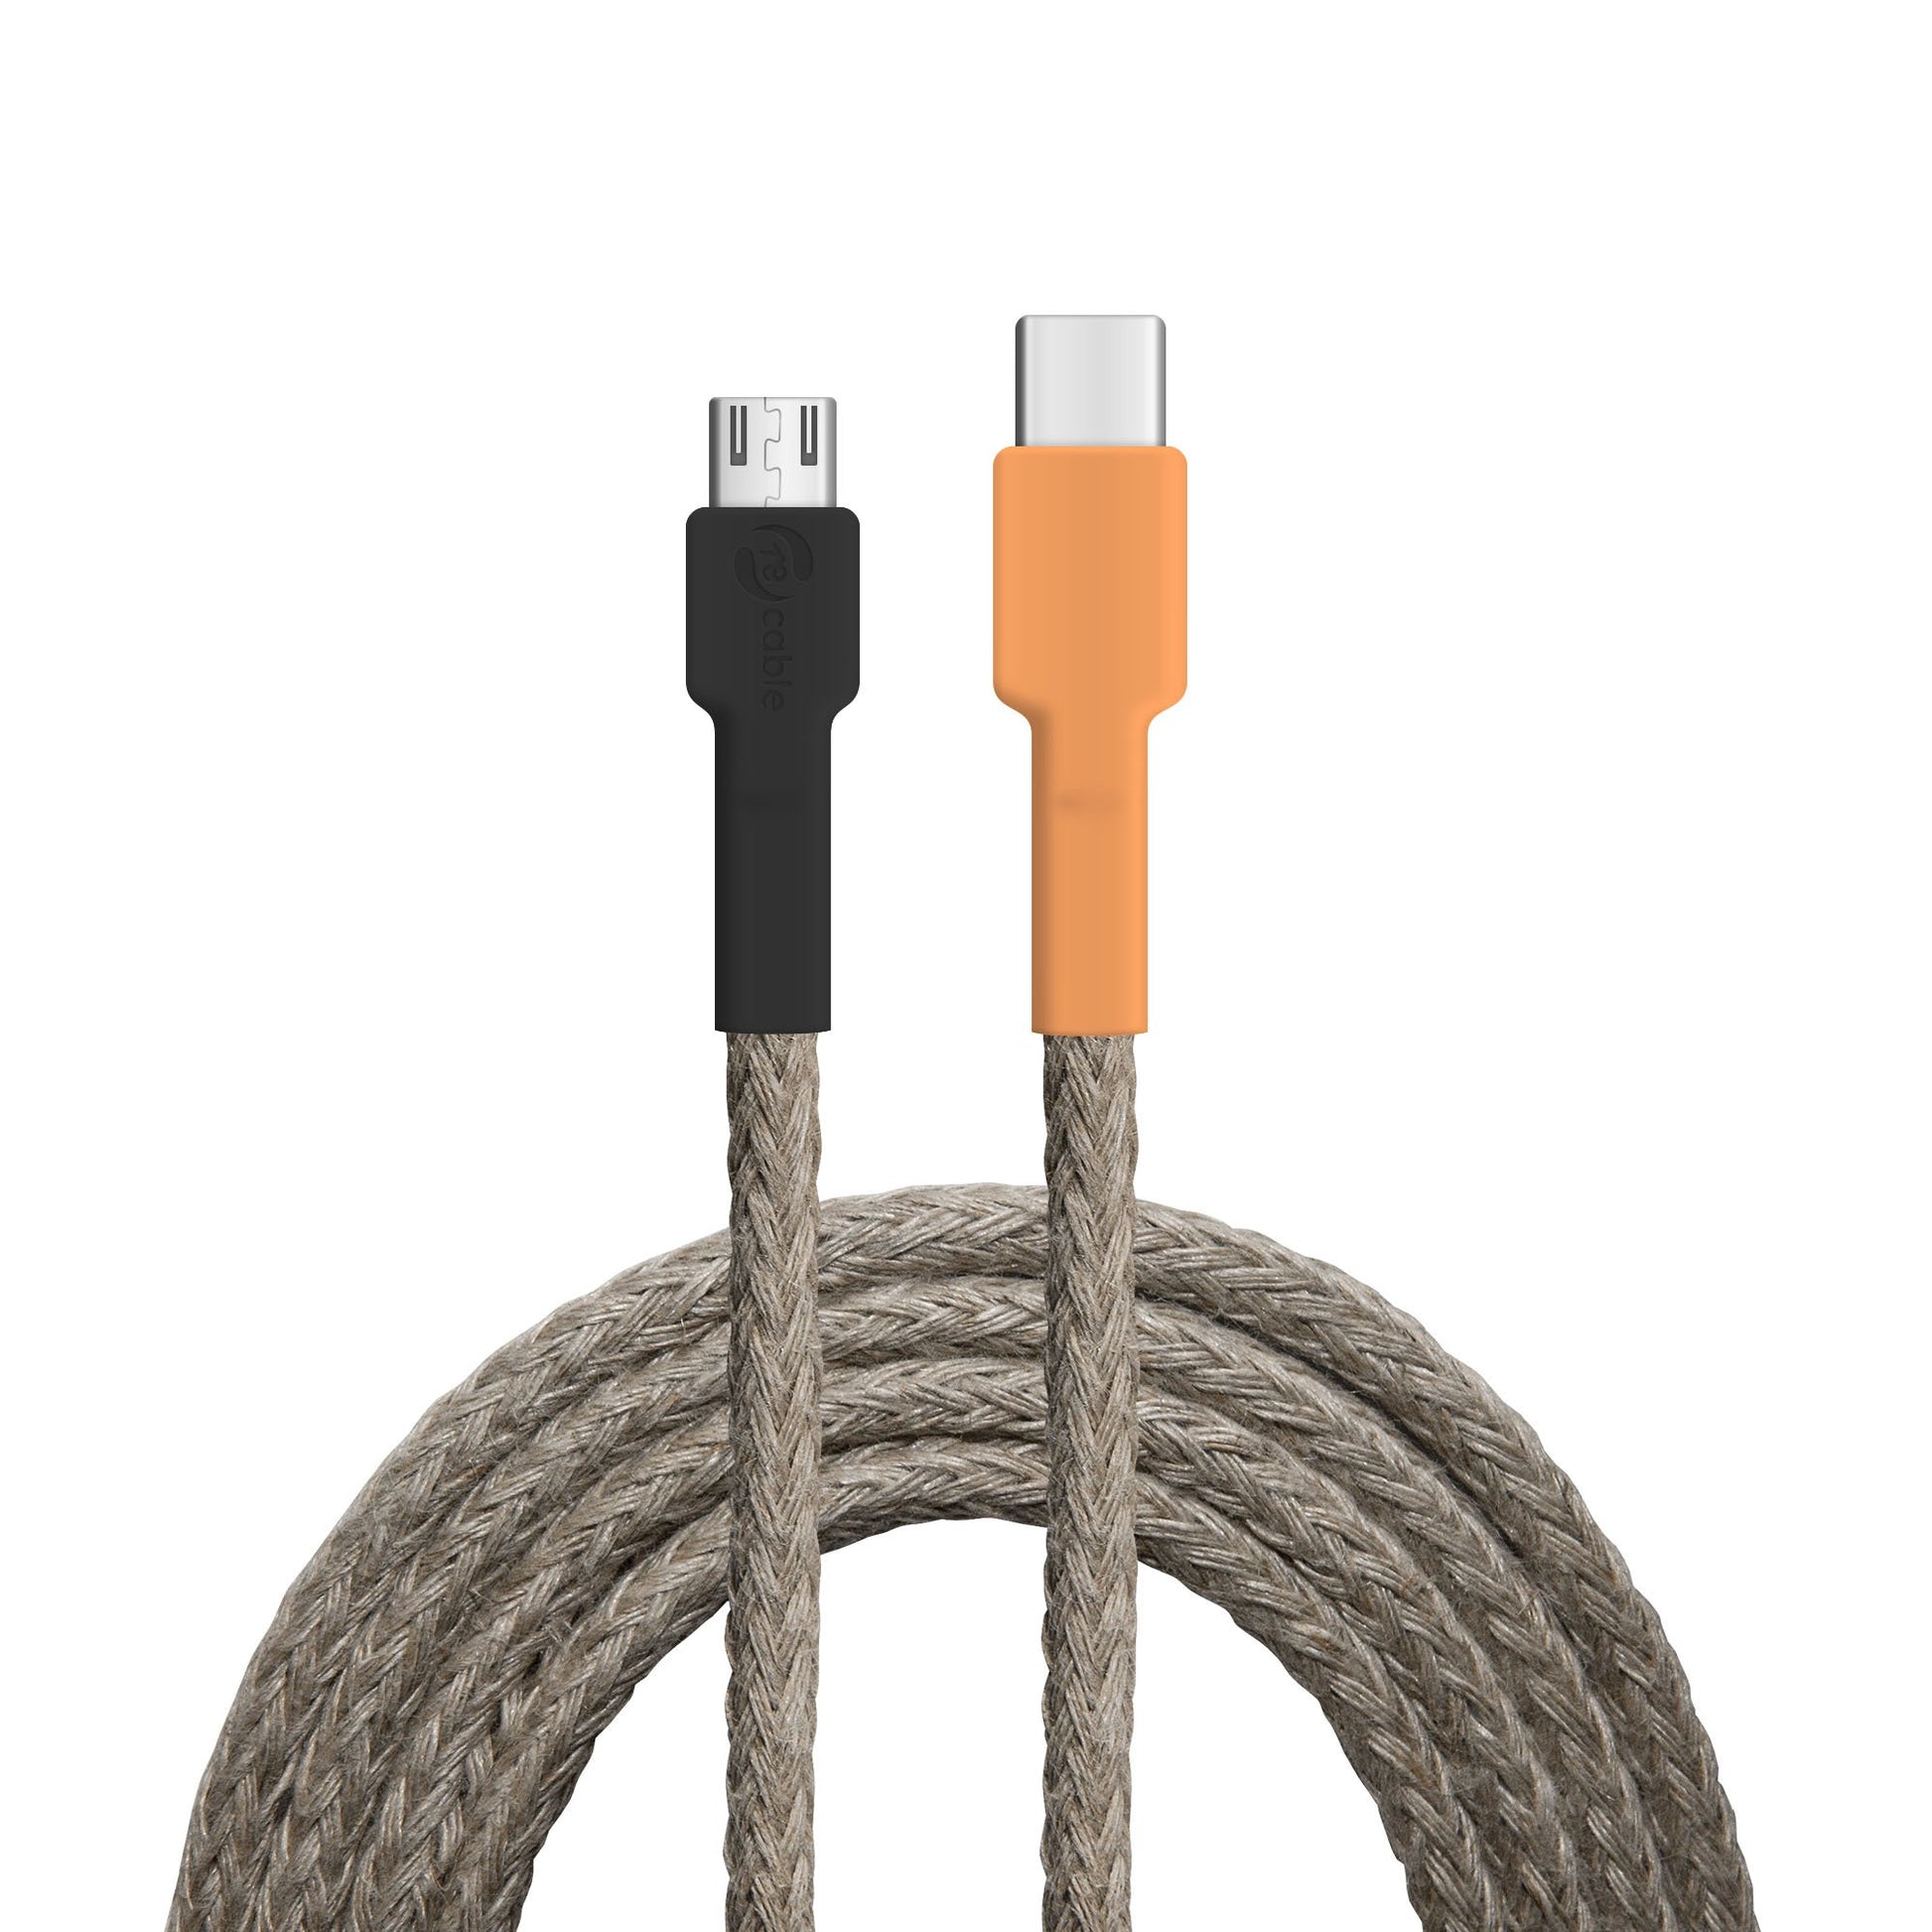 USB-Kabel, Design: Wasser­hahn, Anschlüsse: USB C auf Micro-USB